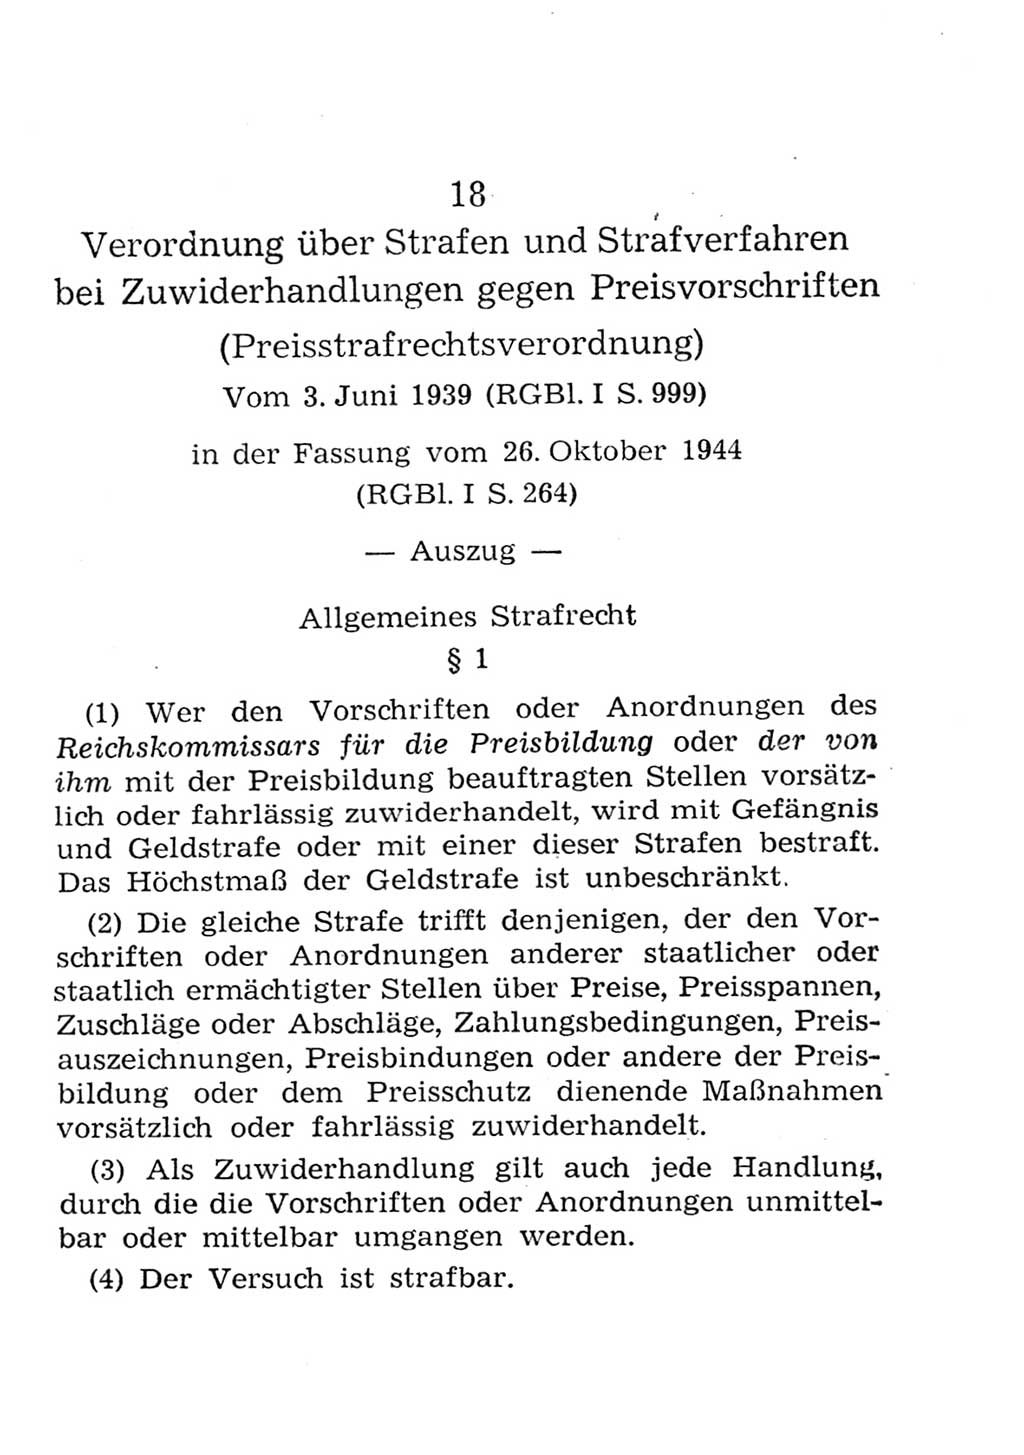 Strafgesetzbuch (StGB) und andere Strafgesetze [Deutsche Demokratische Republik (DDR)] 1957, Seite 311 (StGB Strafges. DDR 1957, S. 311)